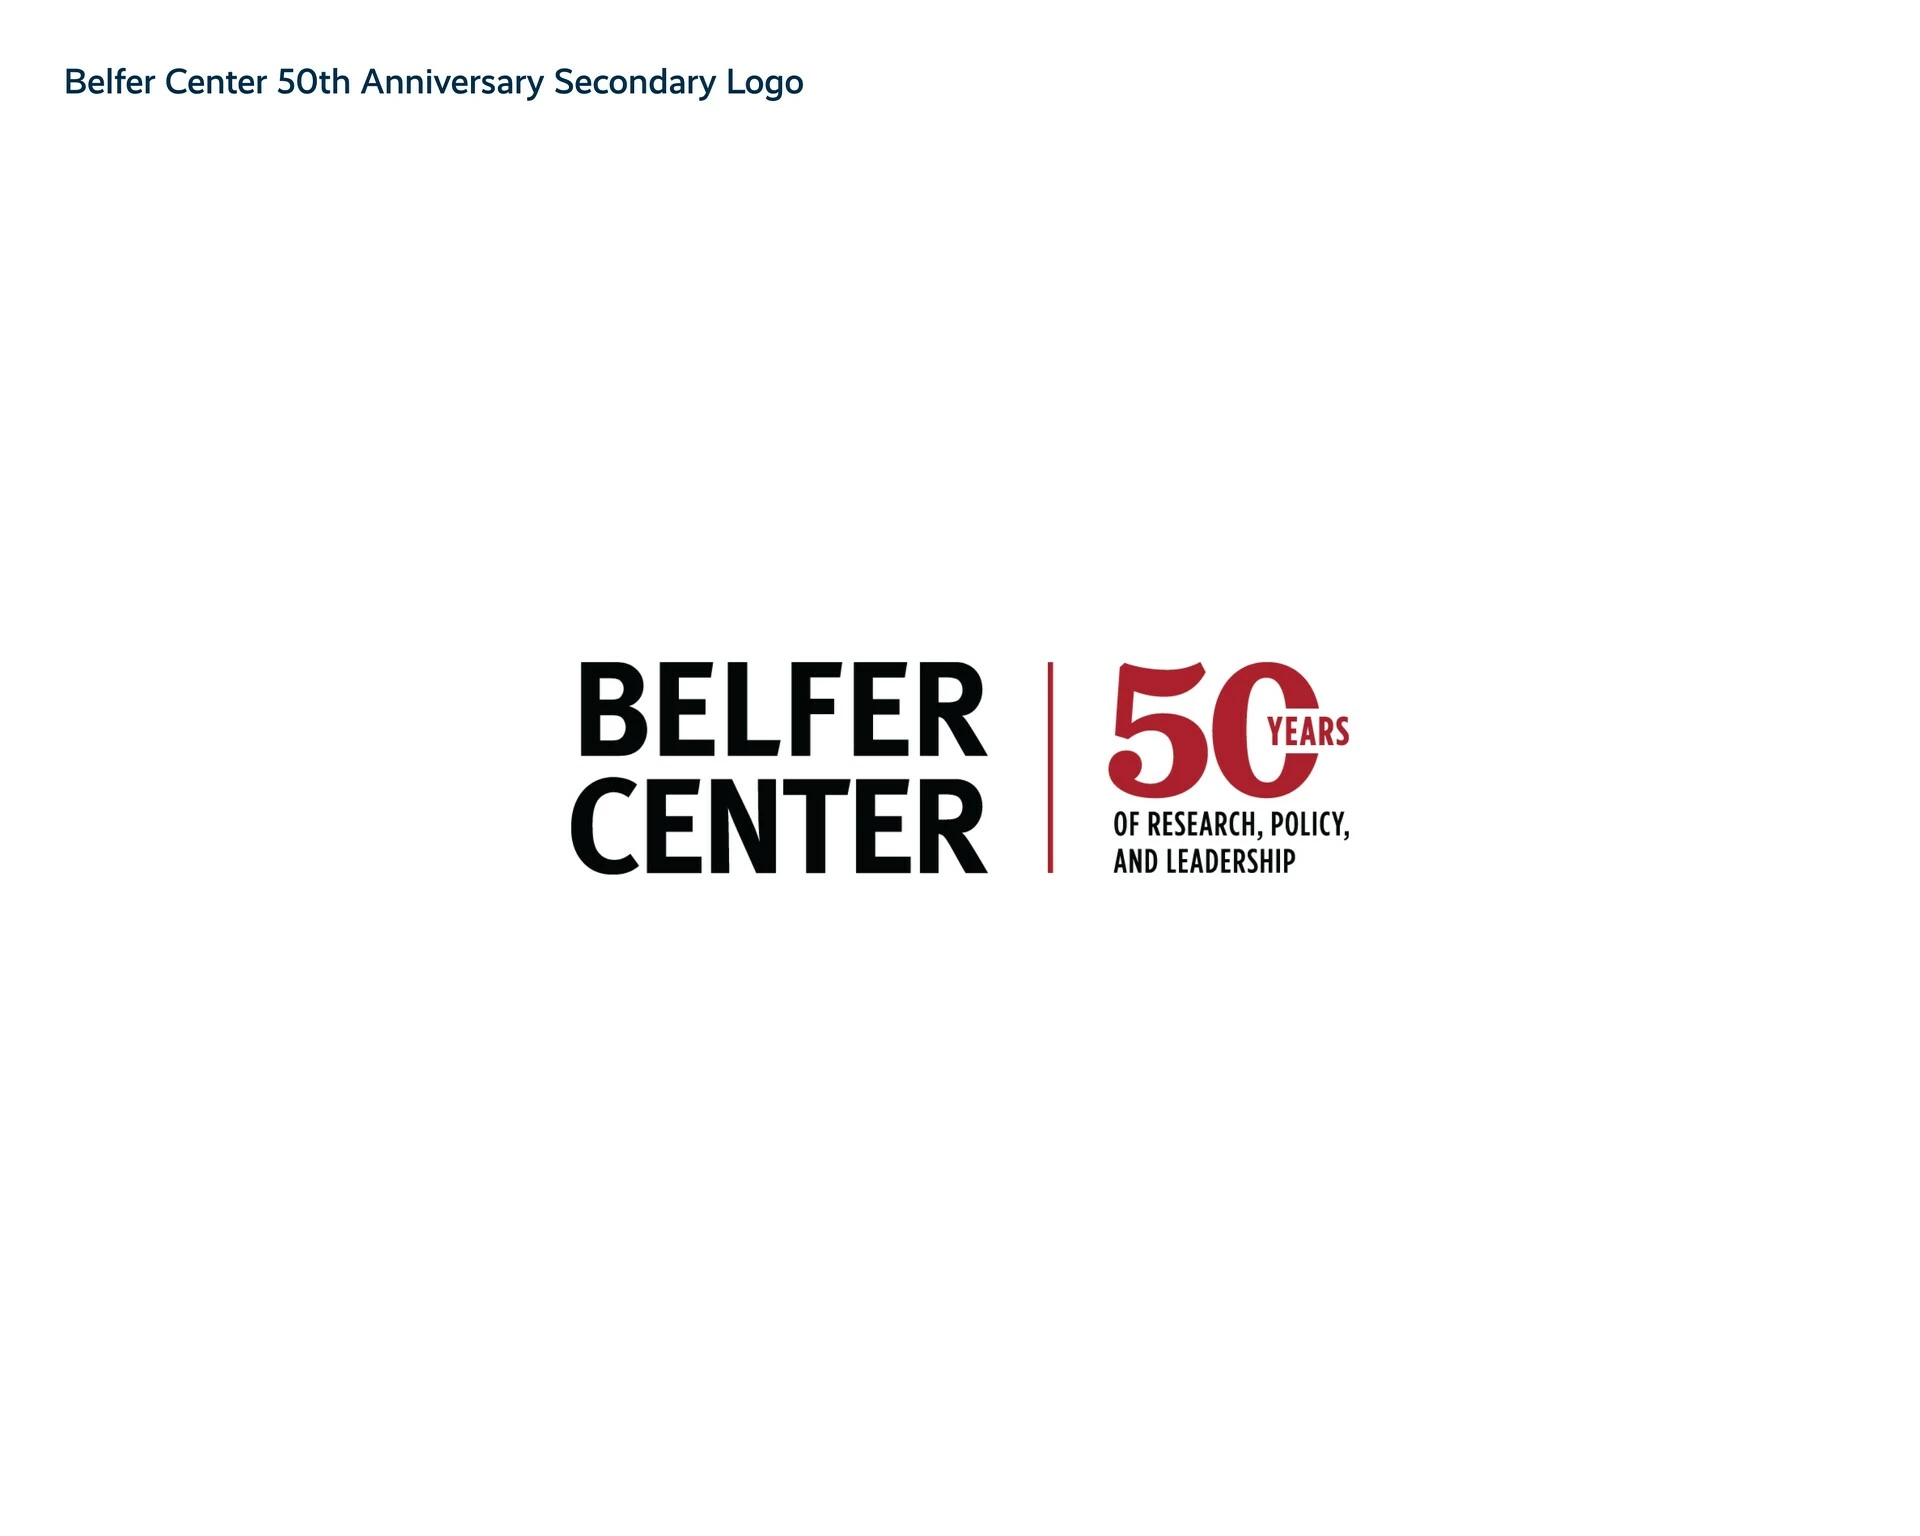 Belfer Center Secondary Logo